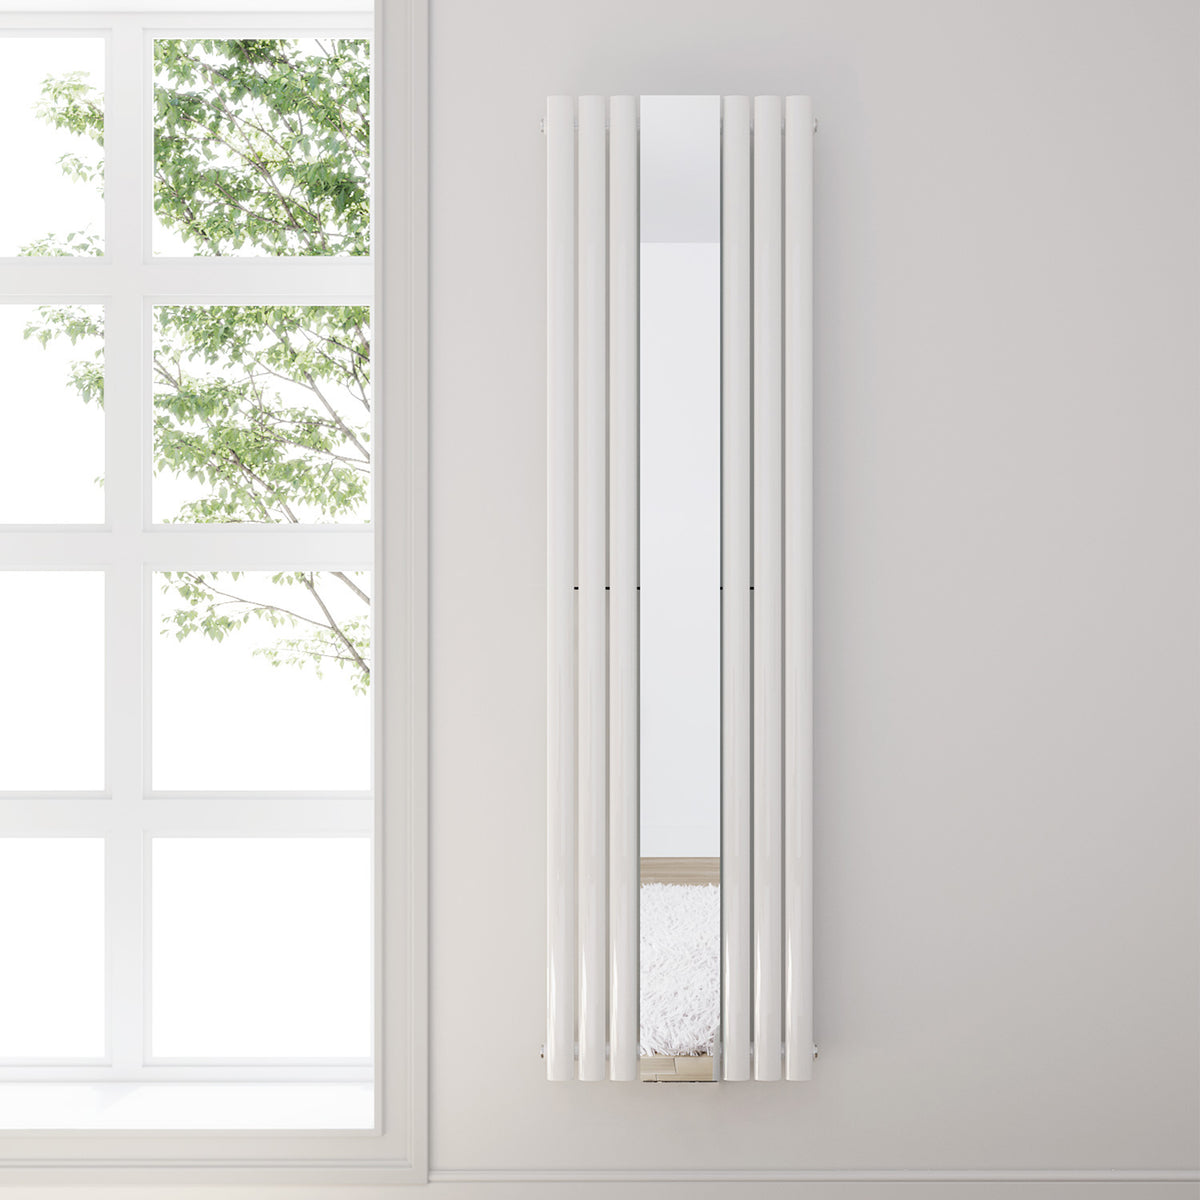 SONNI Röhrenheizkörper mit Spiegel Mittelanschluß Wandheizkörper 1800*503mm Weiß mit Multiblock